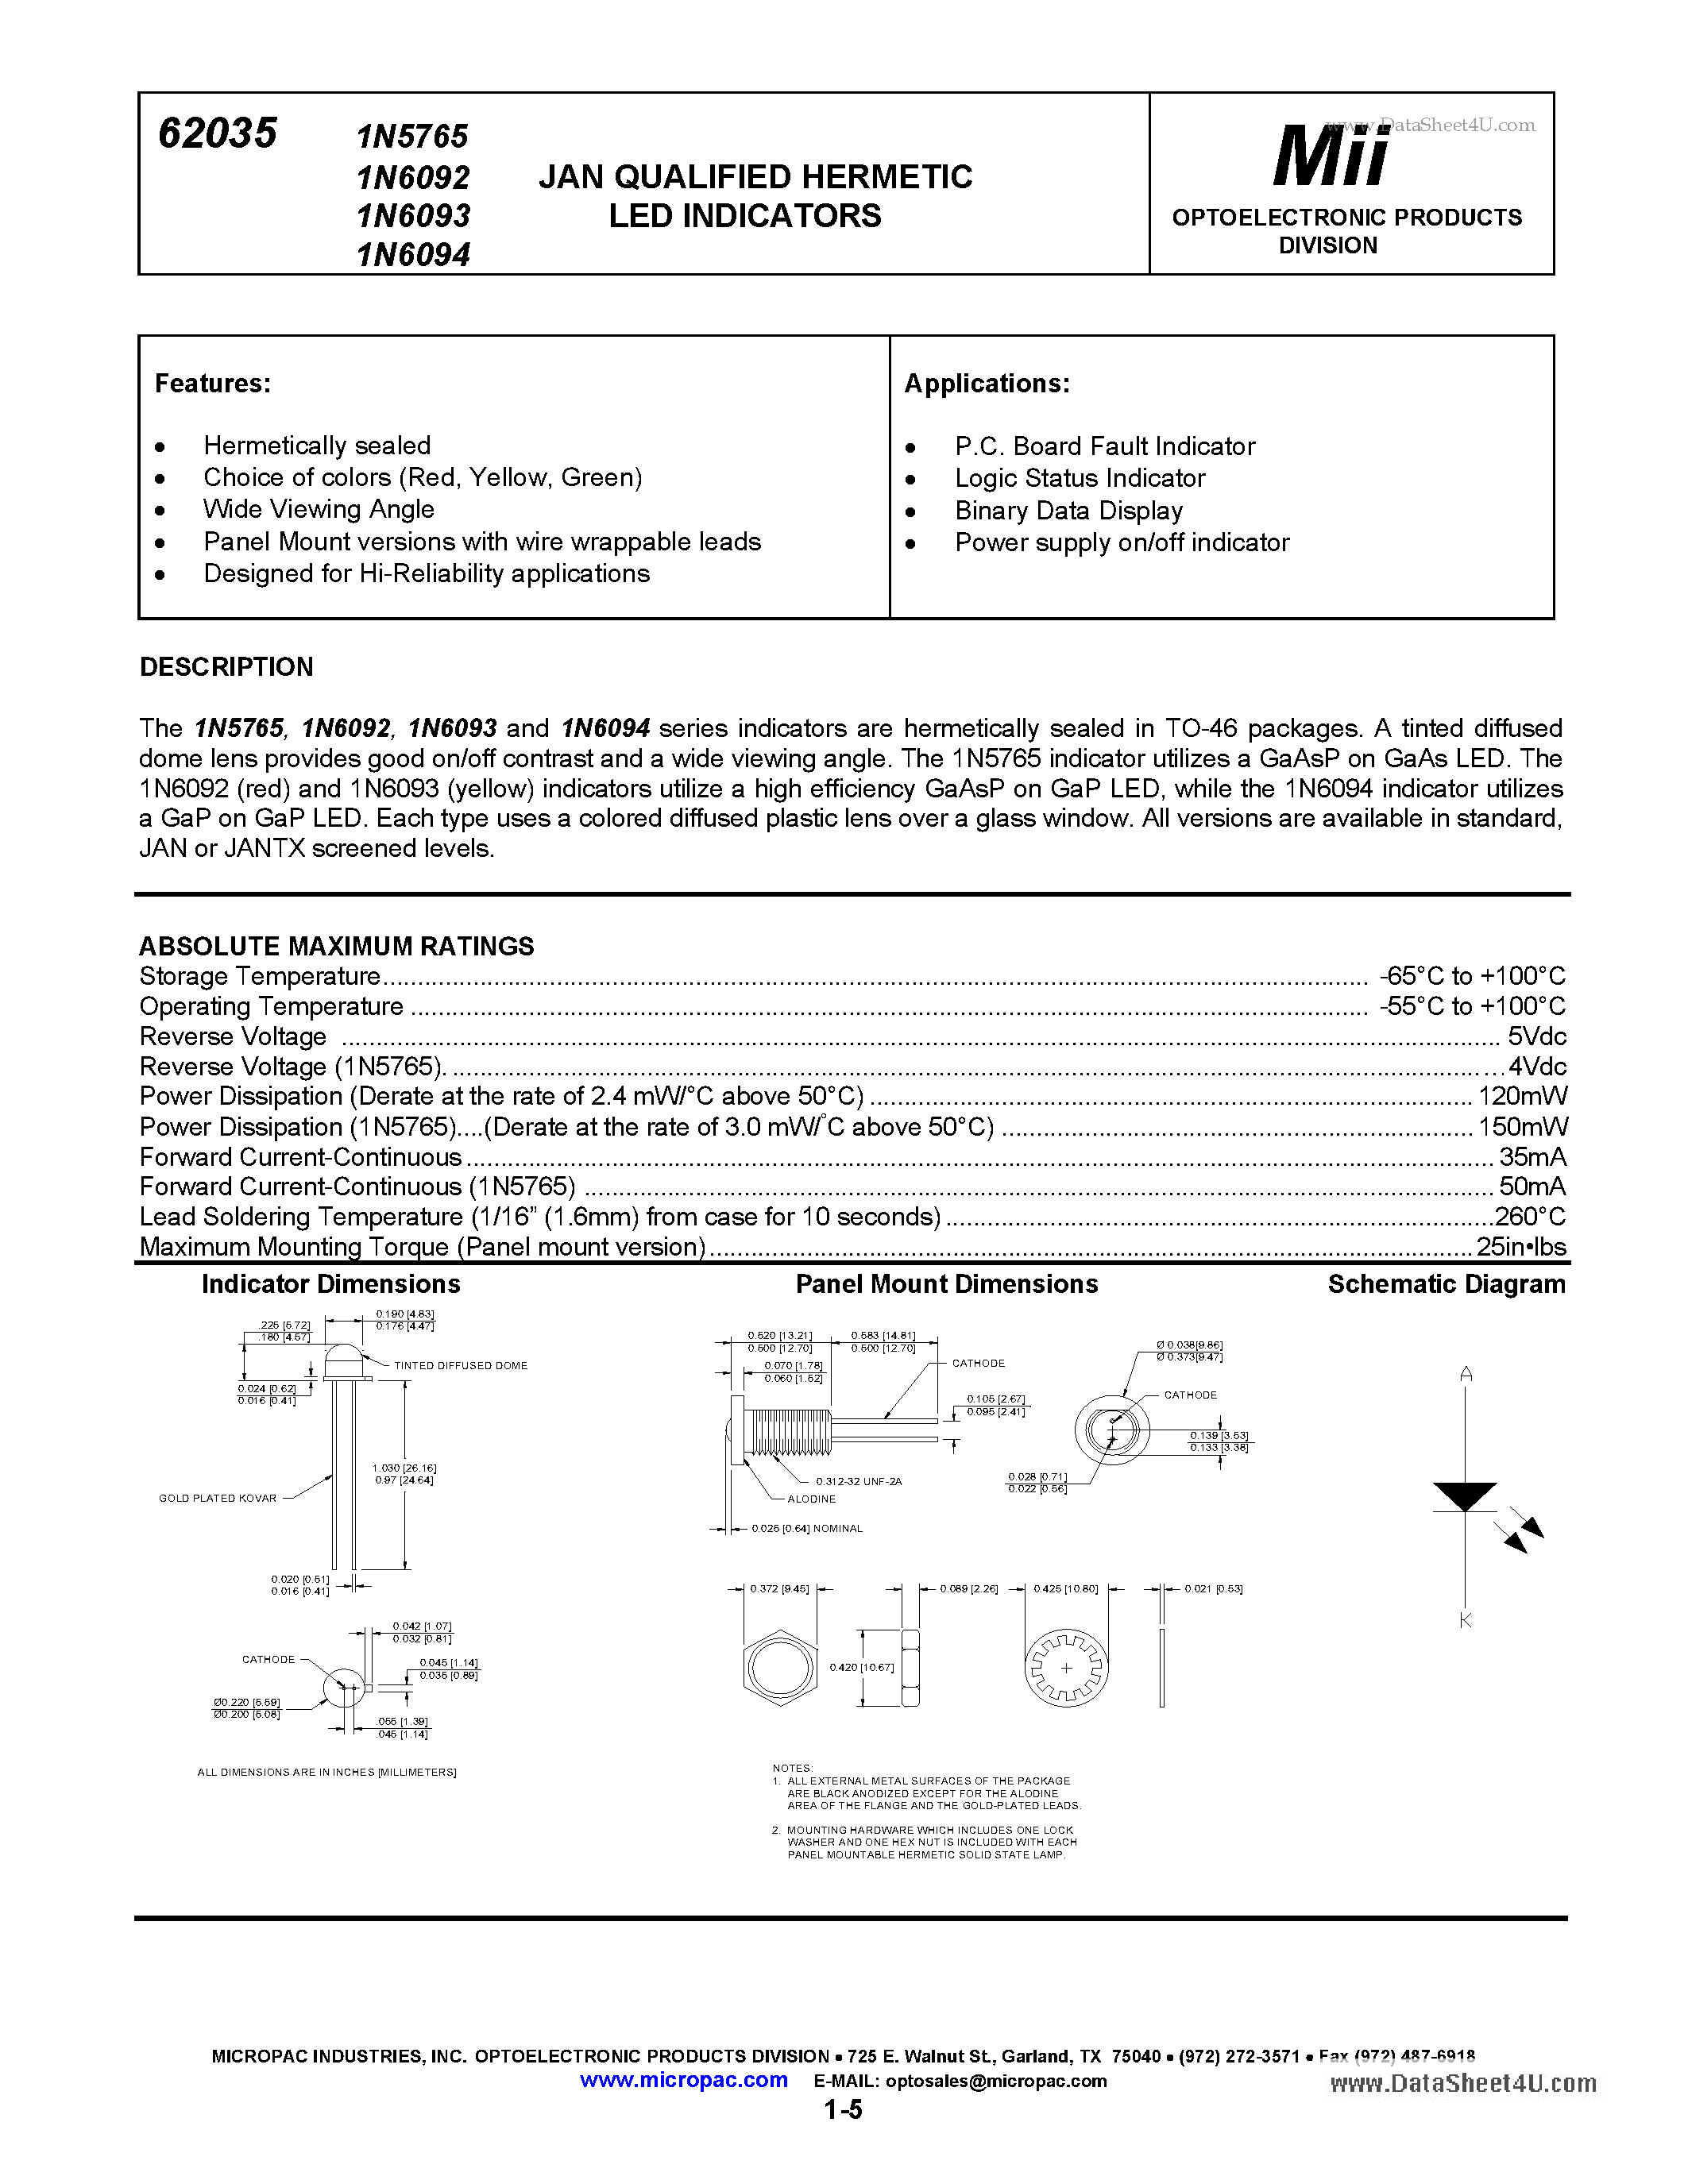 Datasheet 1N6092 - (1N6092 - 1N6094) JAN QUALIFIED HERMETIC LED INDICATORS page 1